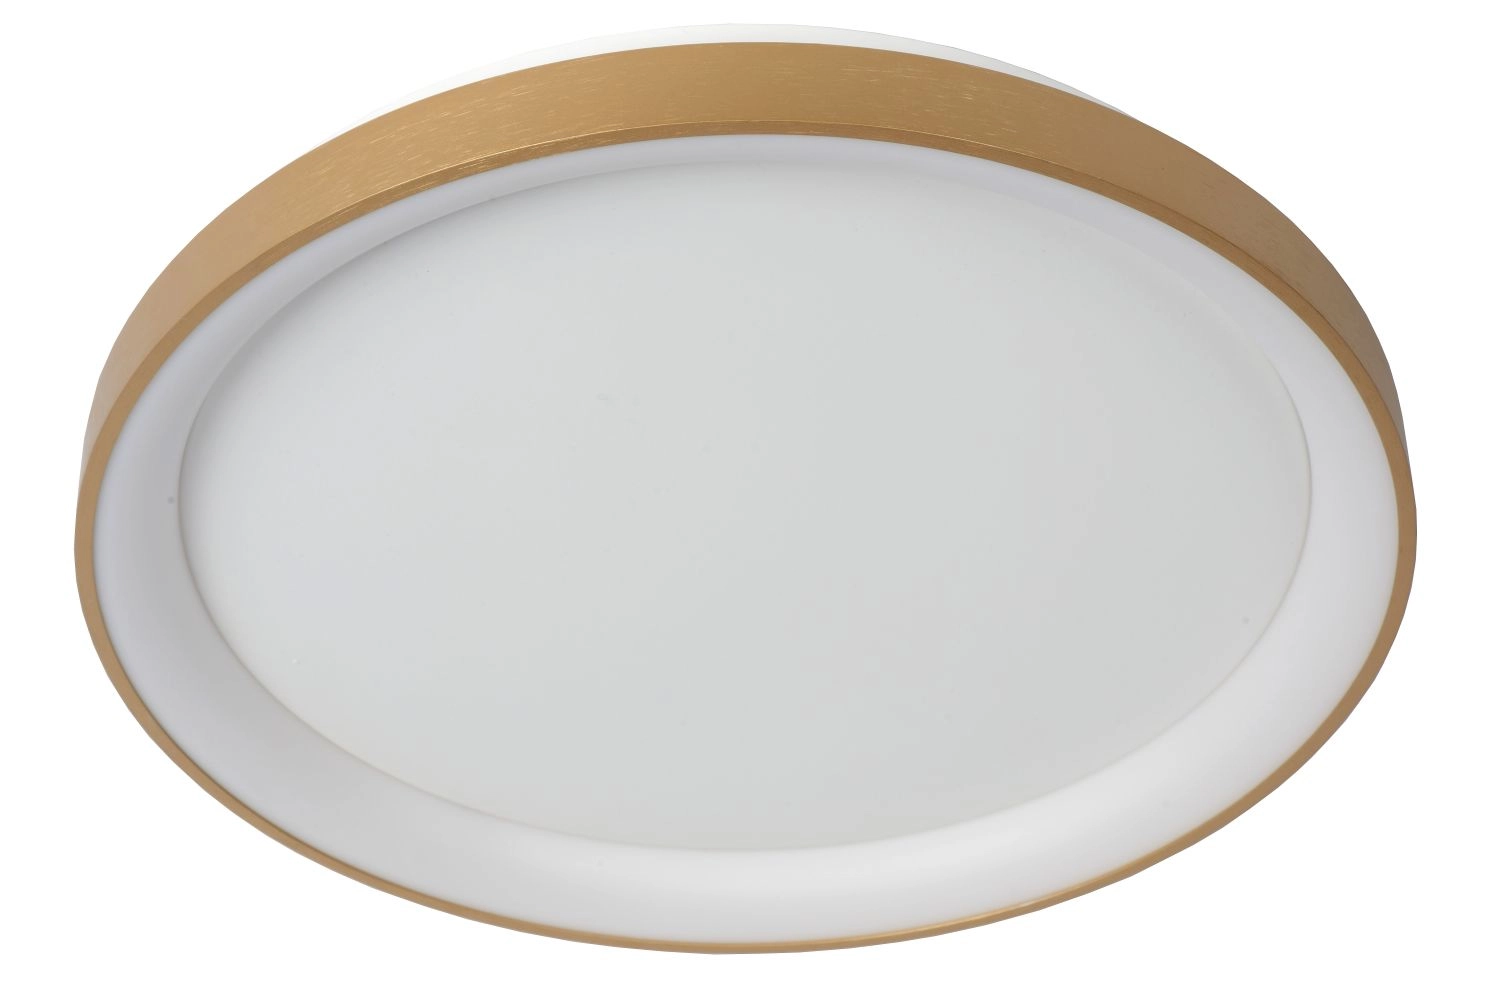 LU 46103/38/02 Lucide VIDAL - Flush ceiling light - Ø 48 cm - LED Dim. - 1x38W 2700K - Matt Gold / B